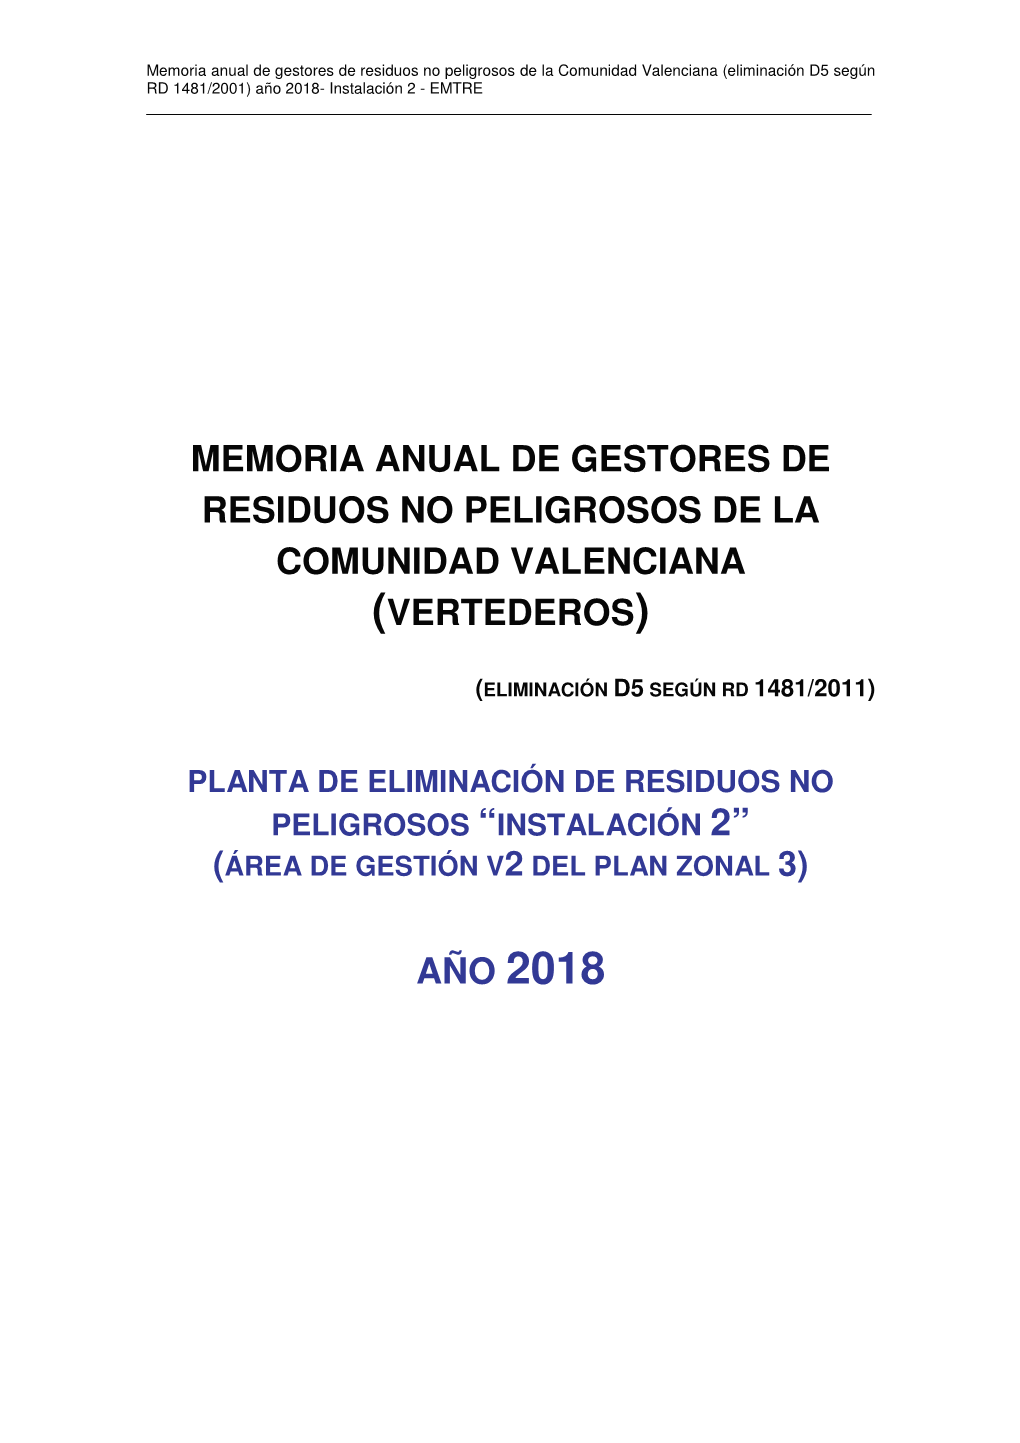 Memoria Anual De Gestores De Residuos No Peligrosos De La Comunidad Valenciana (Eliminación D5 Según RD 1481/2001) Año 2018- Instalación 2 - EMTRE